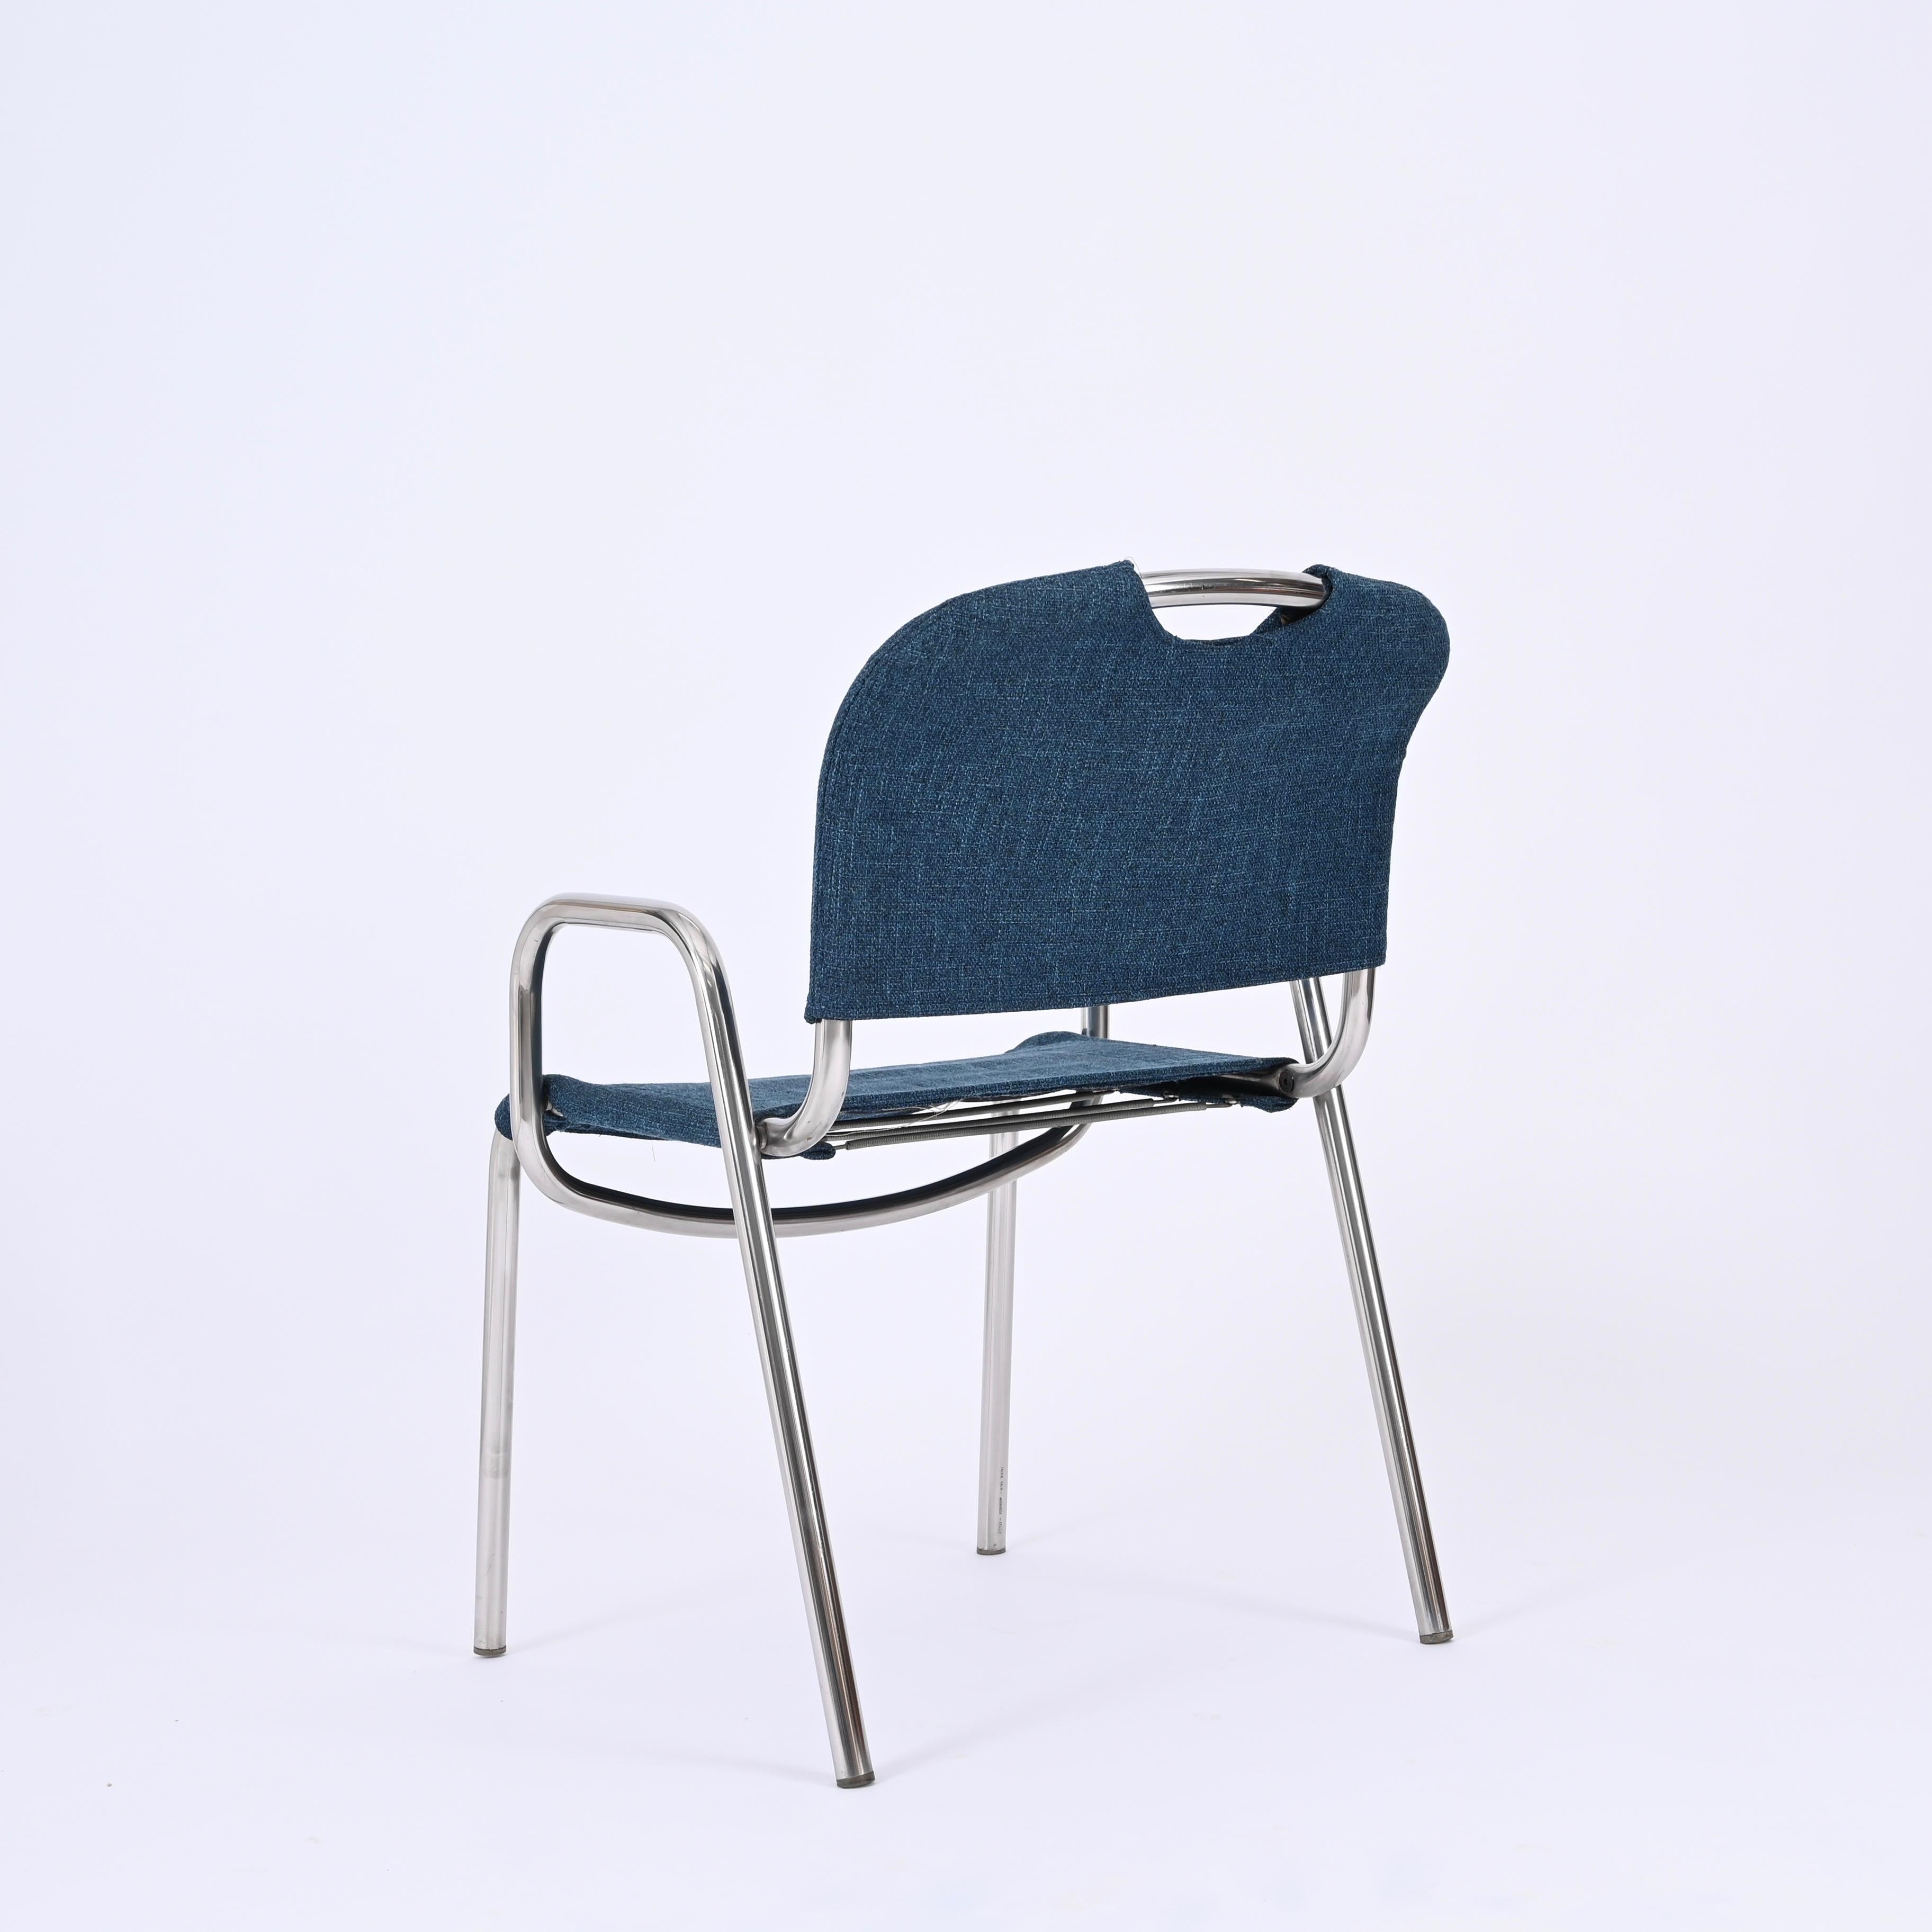 Pair of Blue Castiglietta Dining Chairs by Castiglioni for Zanotta, Italy 1960s For Sale 8